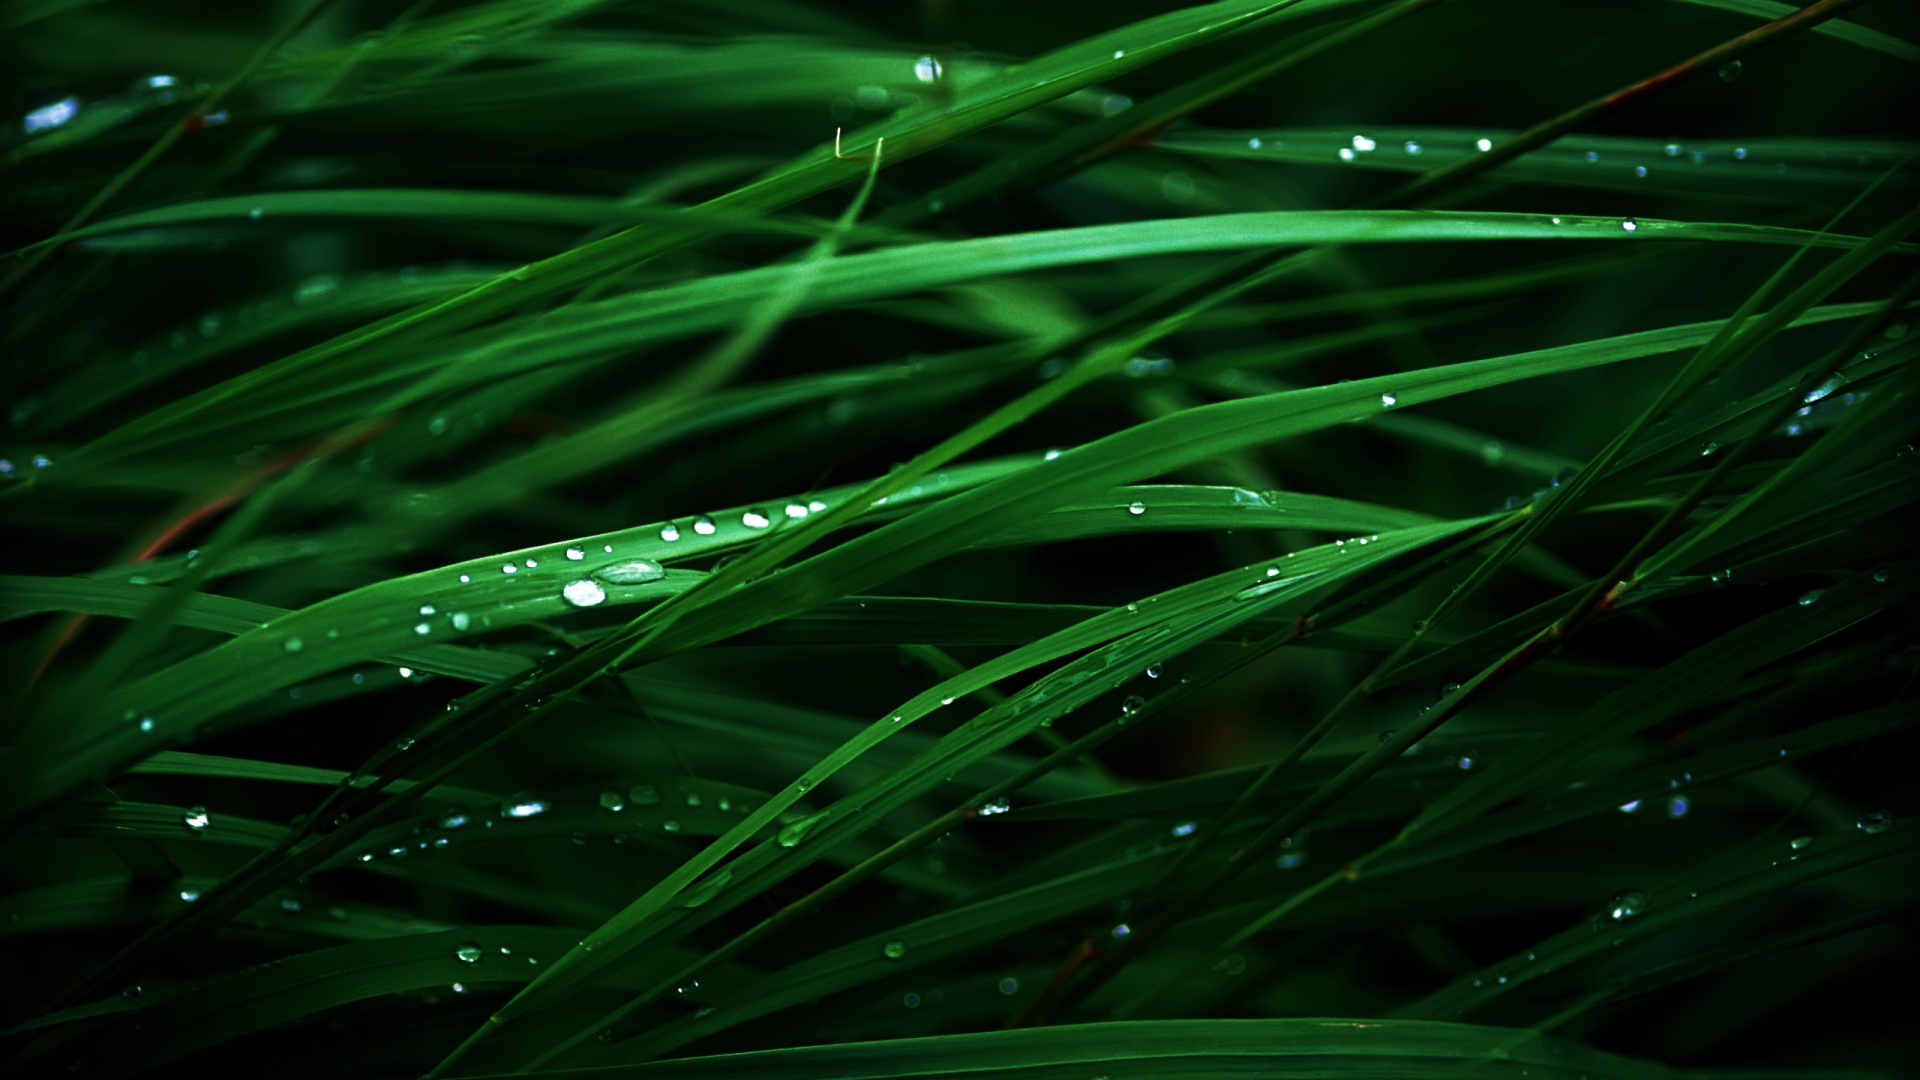 Lush Green Grass - High Definition, High Resolution HD Wallpapers : High  Definition, High Resolution HD Wallpapers